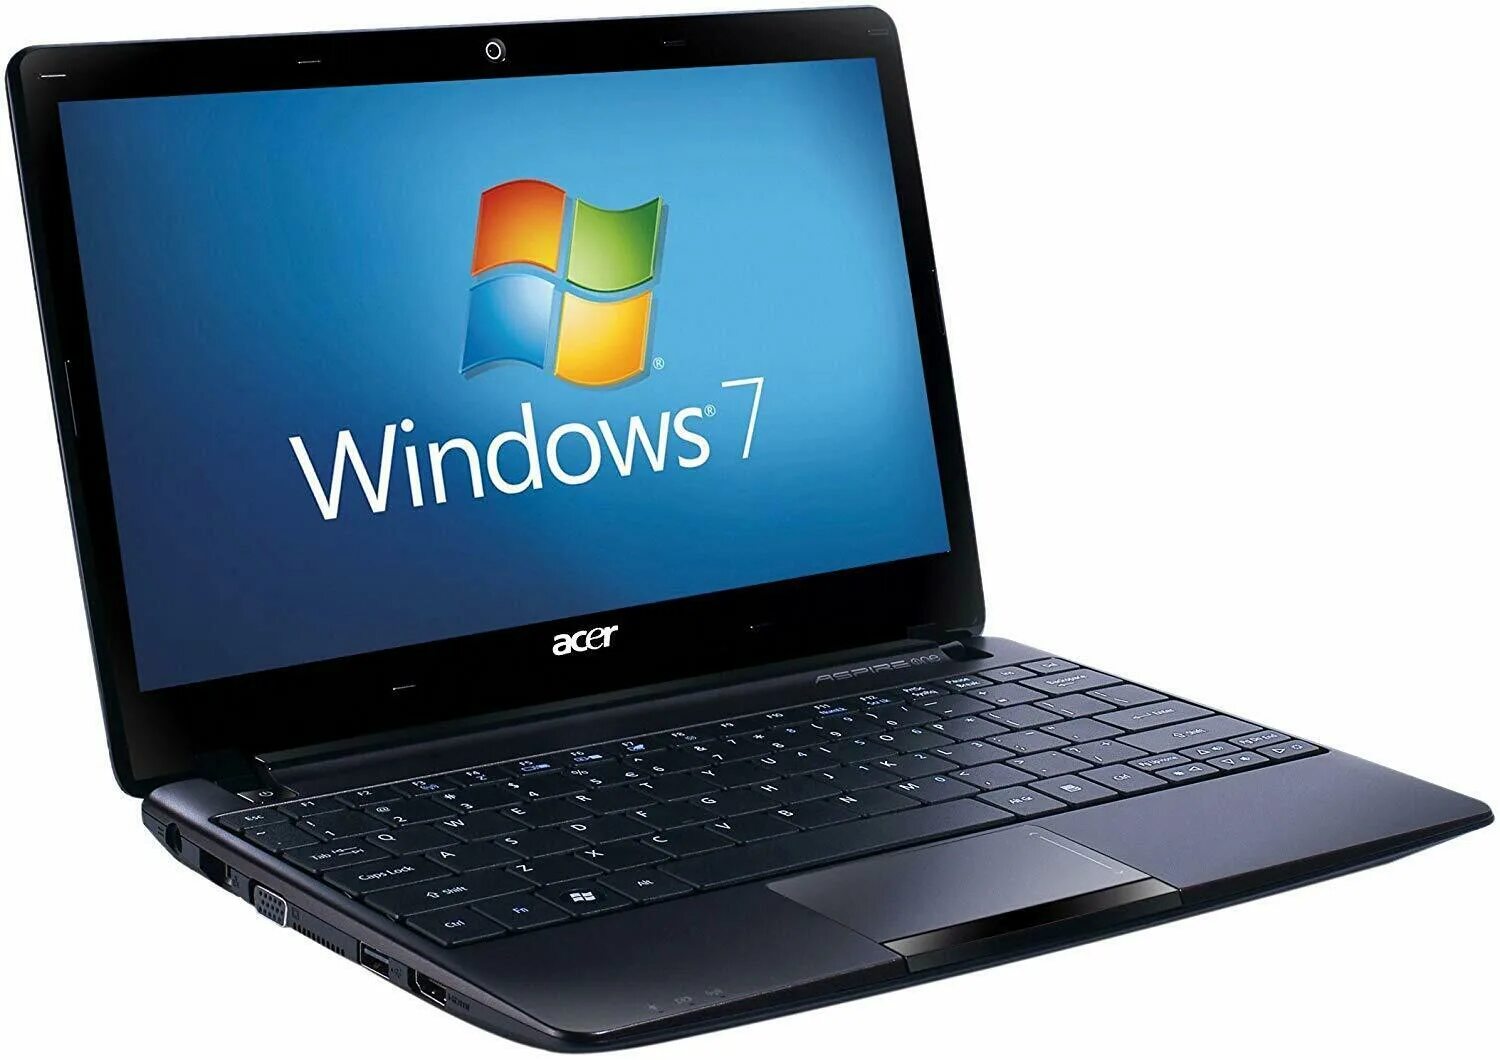 Acer aspire one купить. Ноутбук emachines pav70. Acer Aspire one d255. Aspire one d257-13dqkk. Ноутбук Acer Aspire one aod257-n57dqkk.